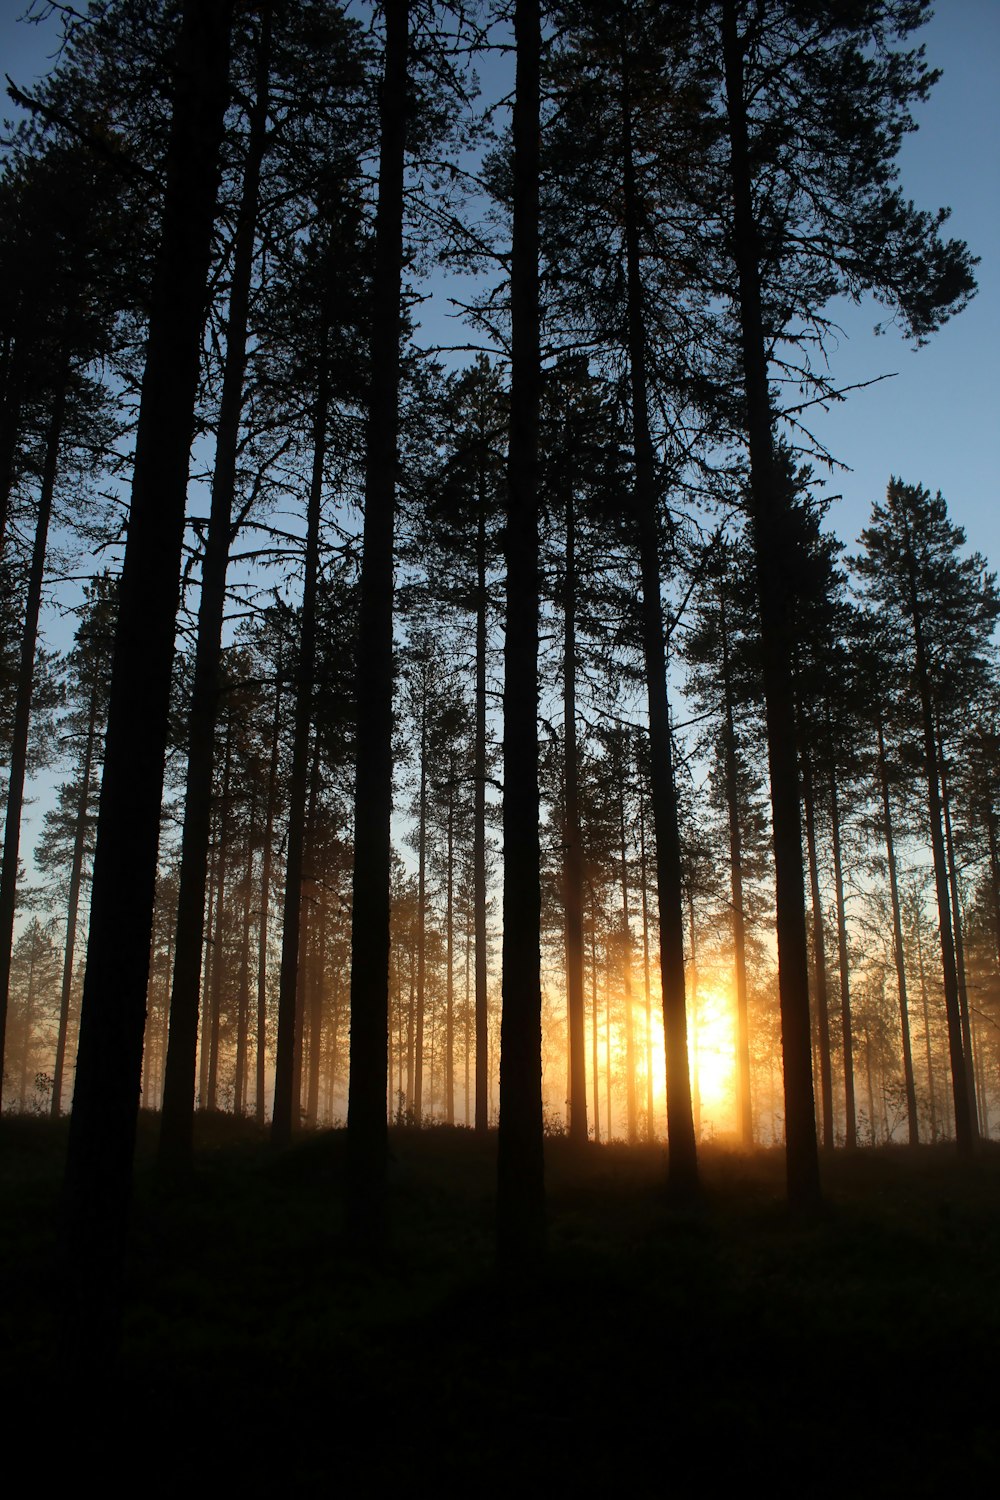 Silueta de árboles durante la puesta del sol